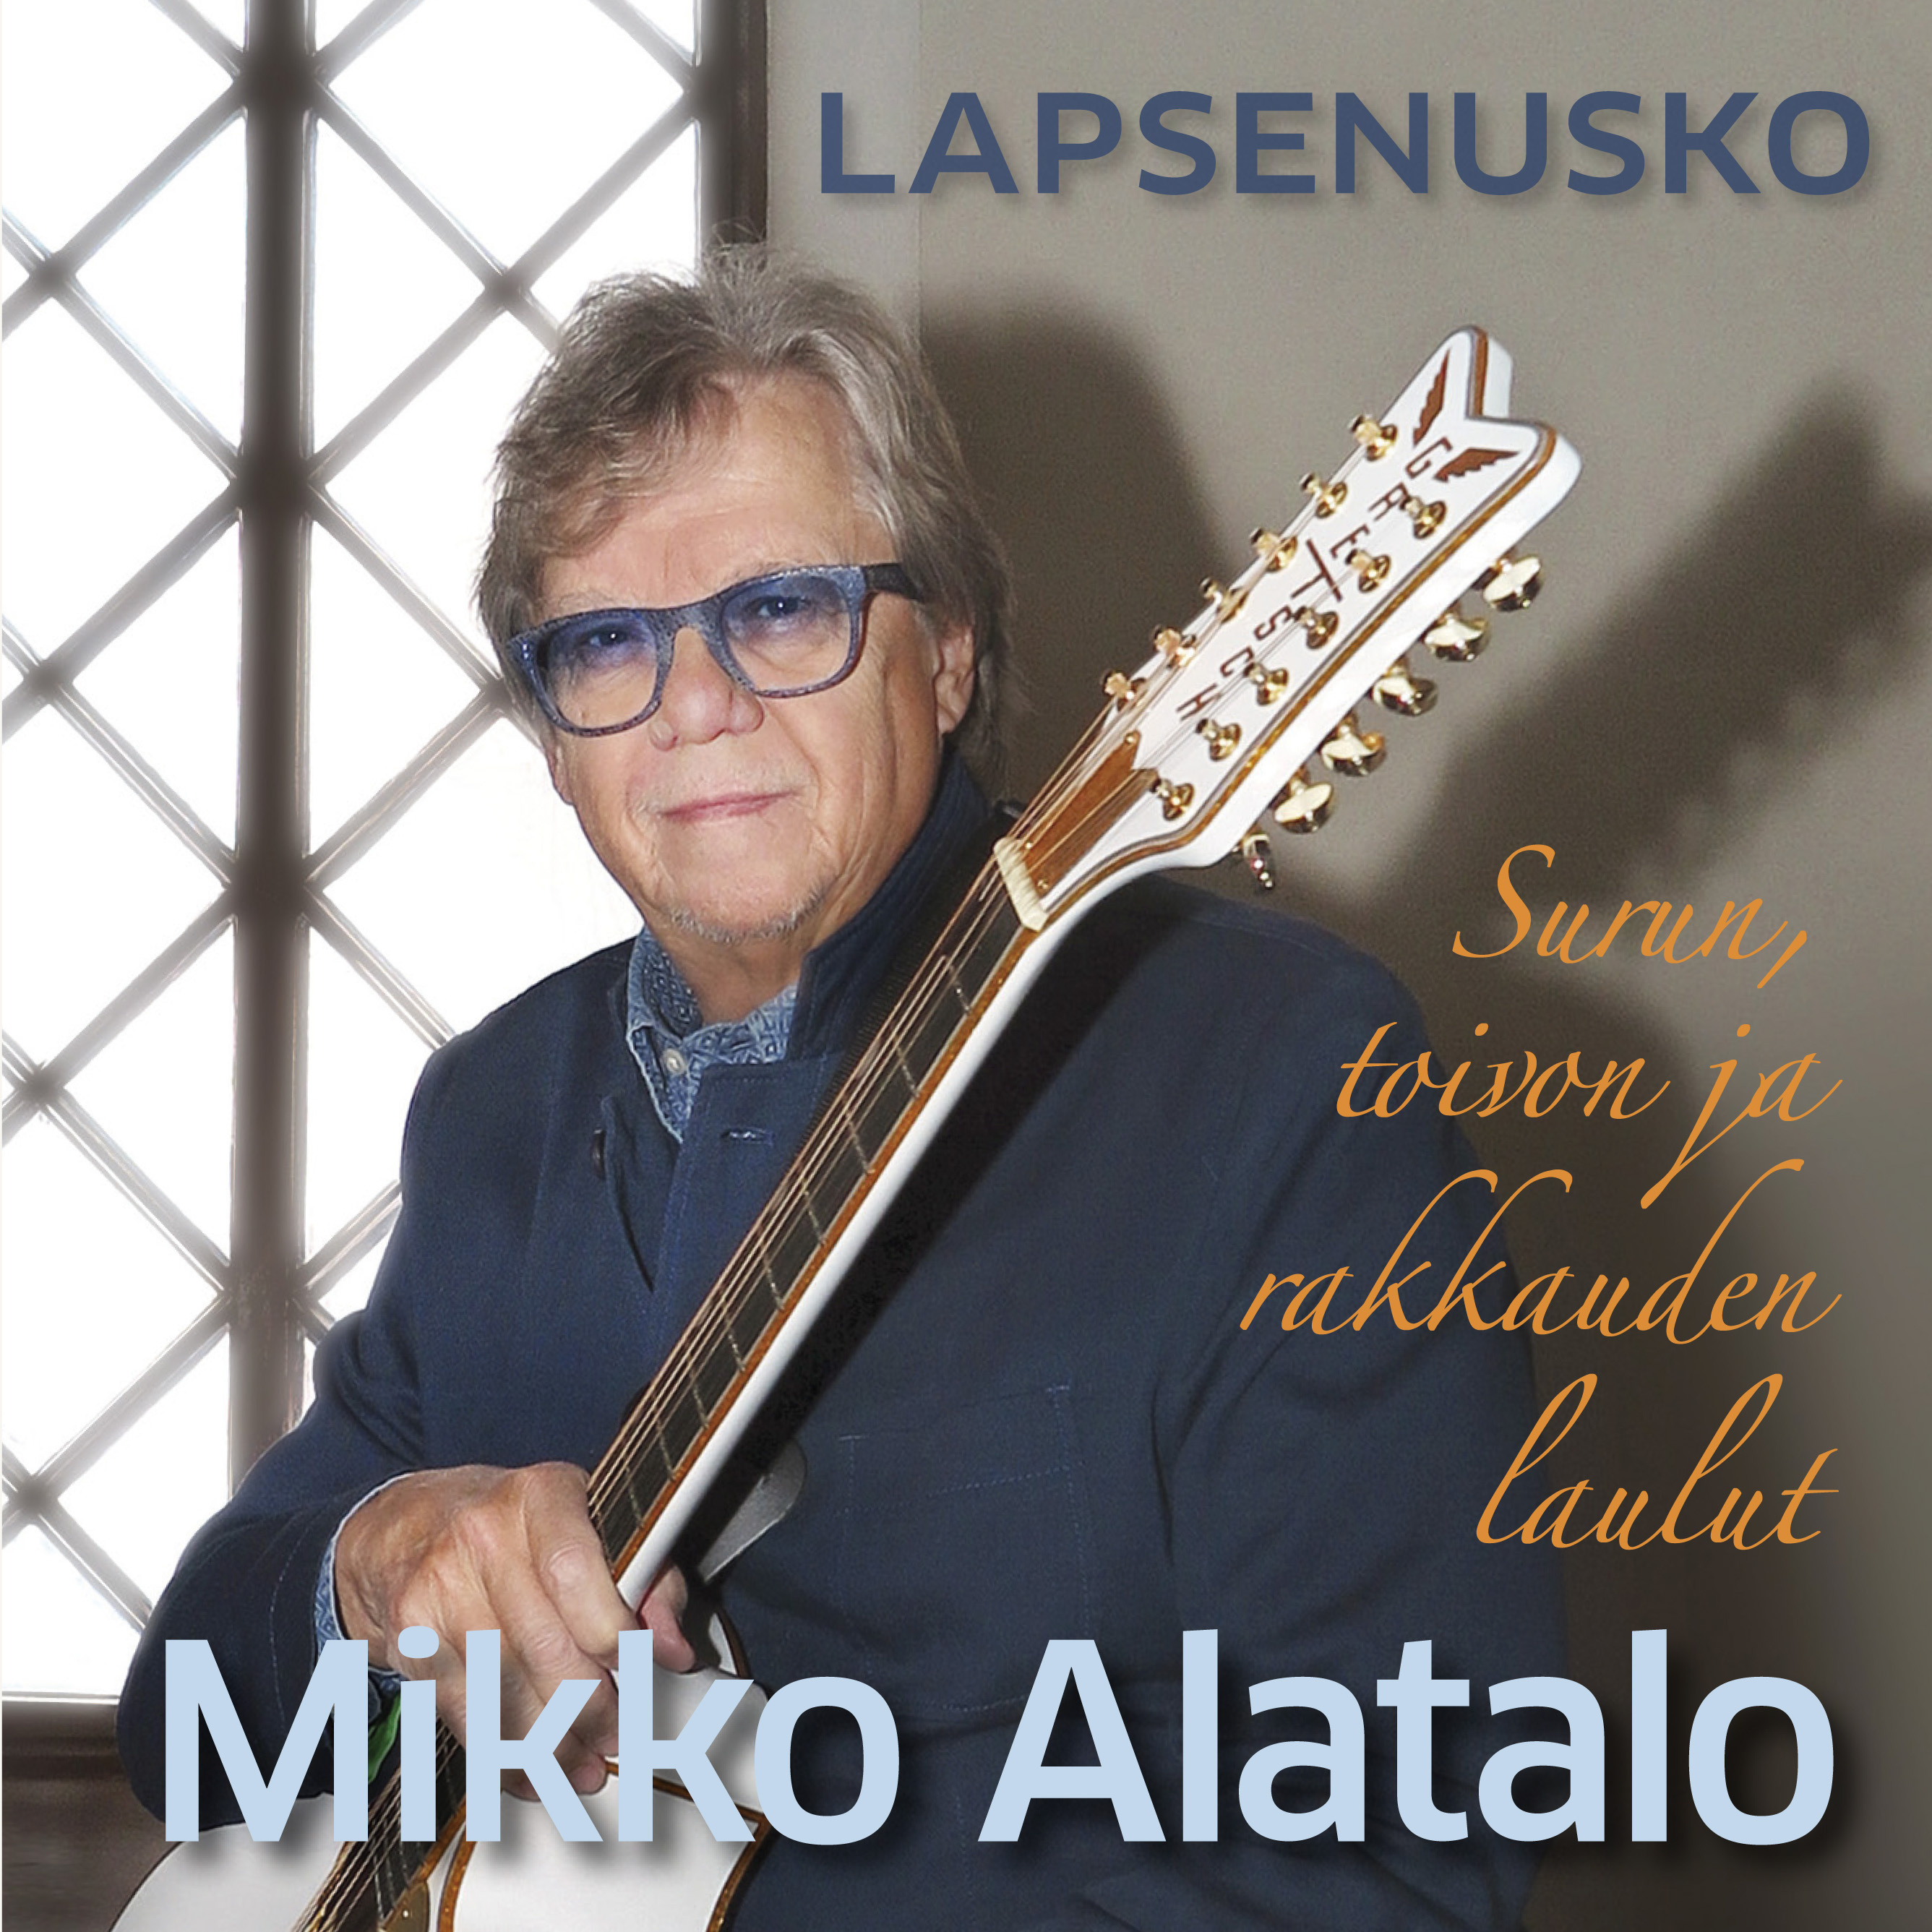 Mikko Alatalo - Lapsenusko (Surun, toivon ja rakkau - CD